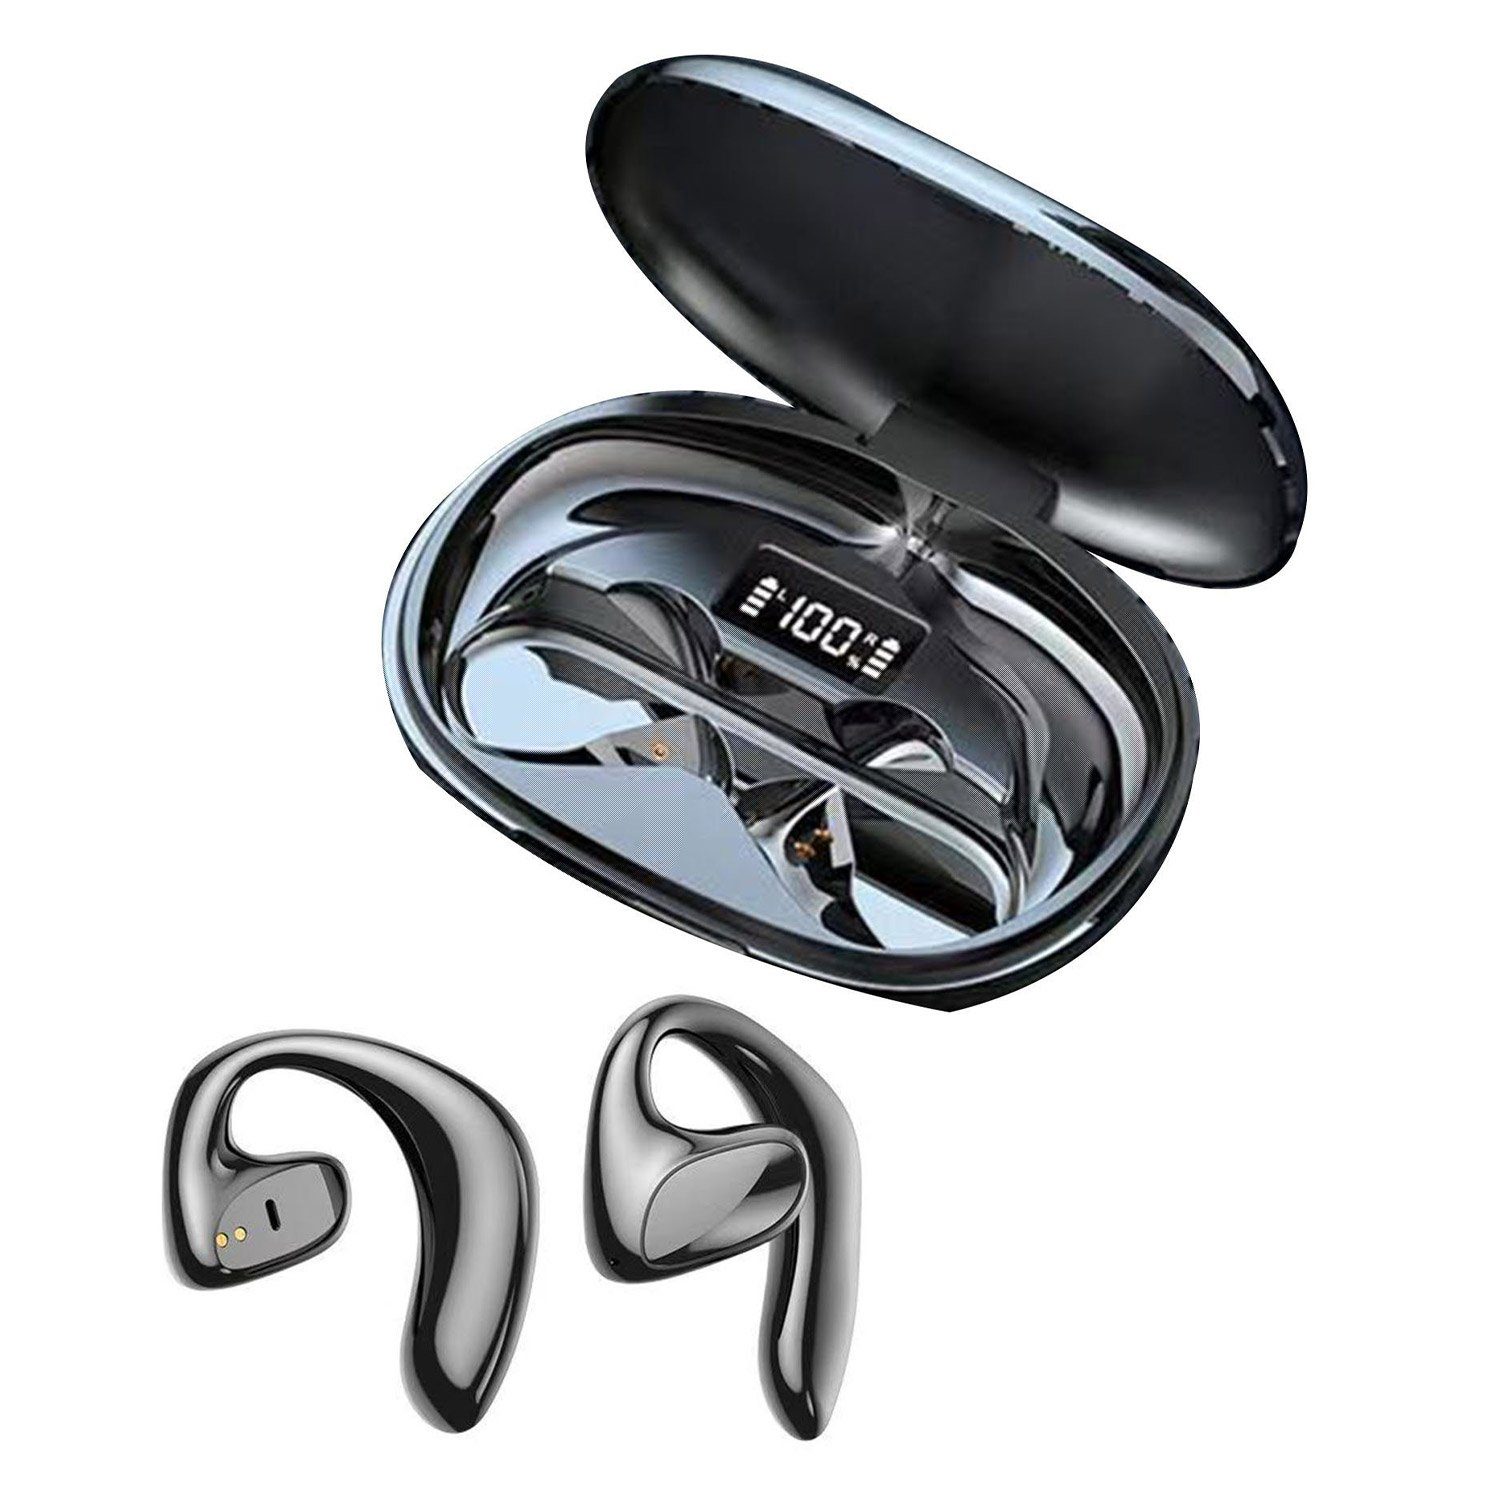 MAGICSHE Knochenleitungs-Headset 5.1 Bluetooth-Kopfhörer (Bluetooth) Schwarz